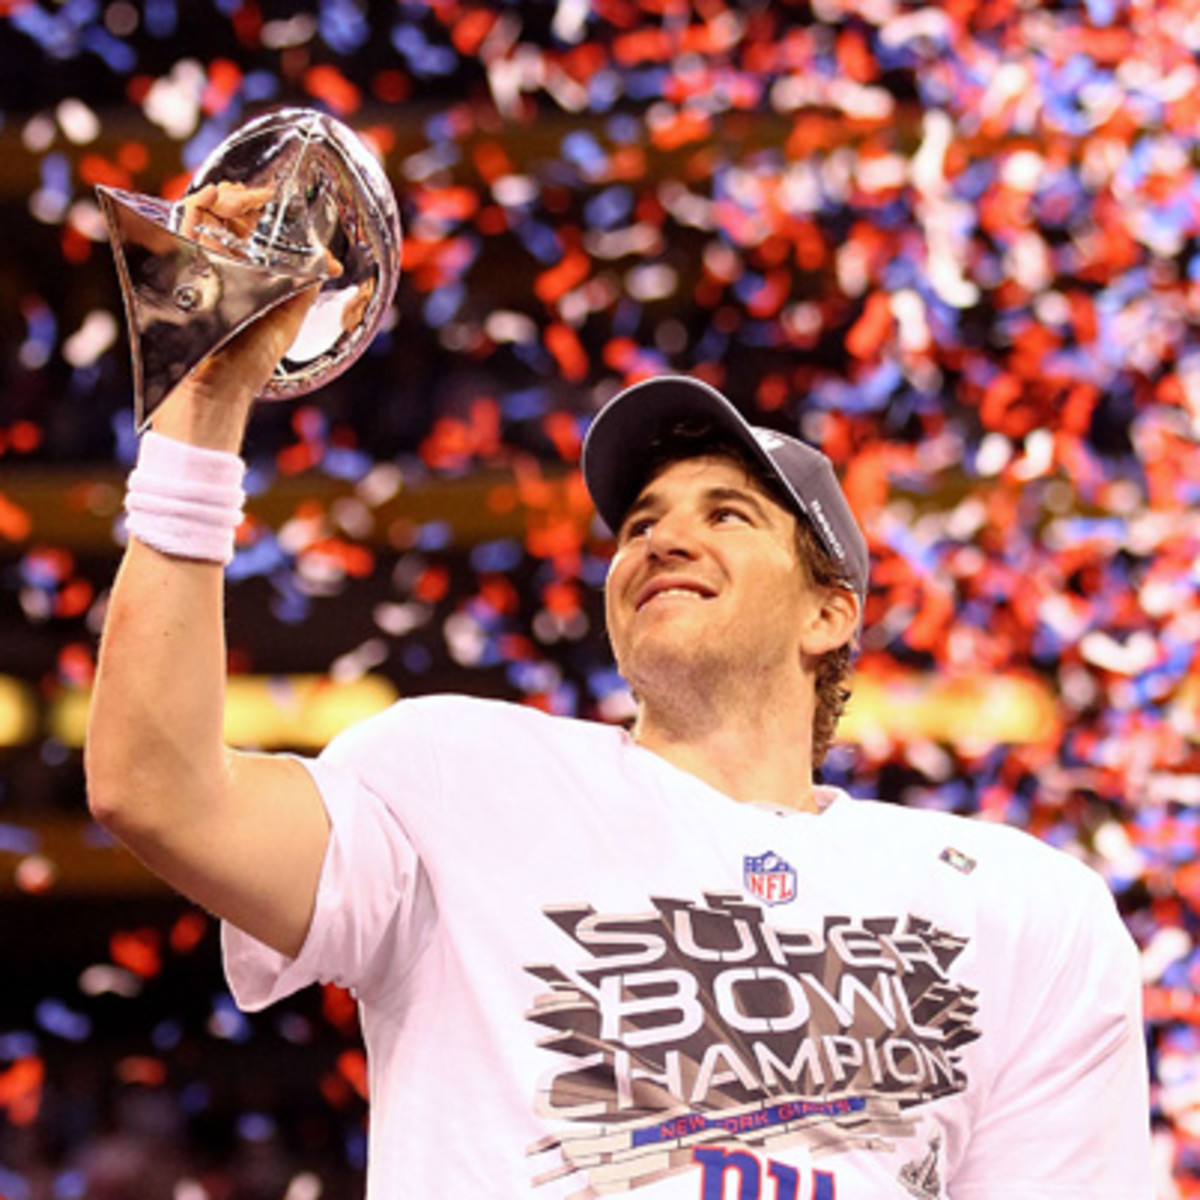 Eli Manning hoisting the Super Bowl trophy